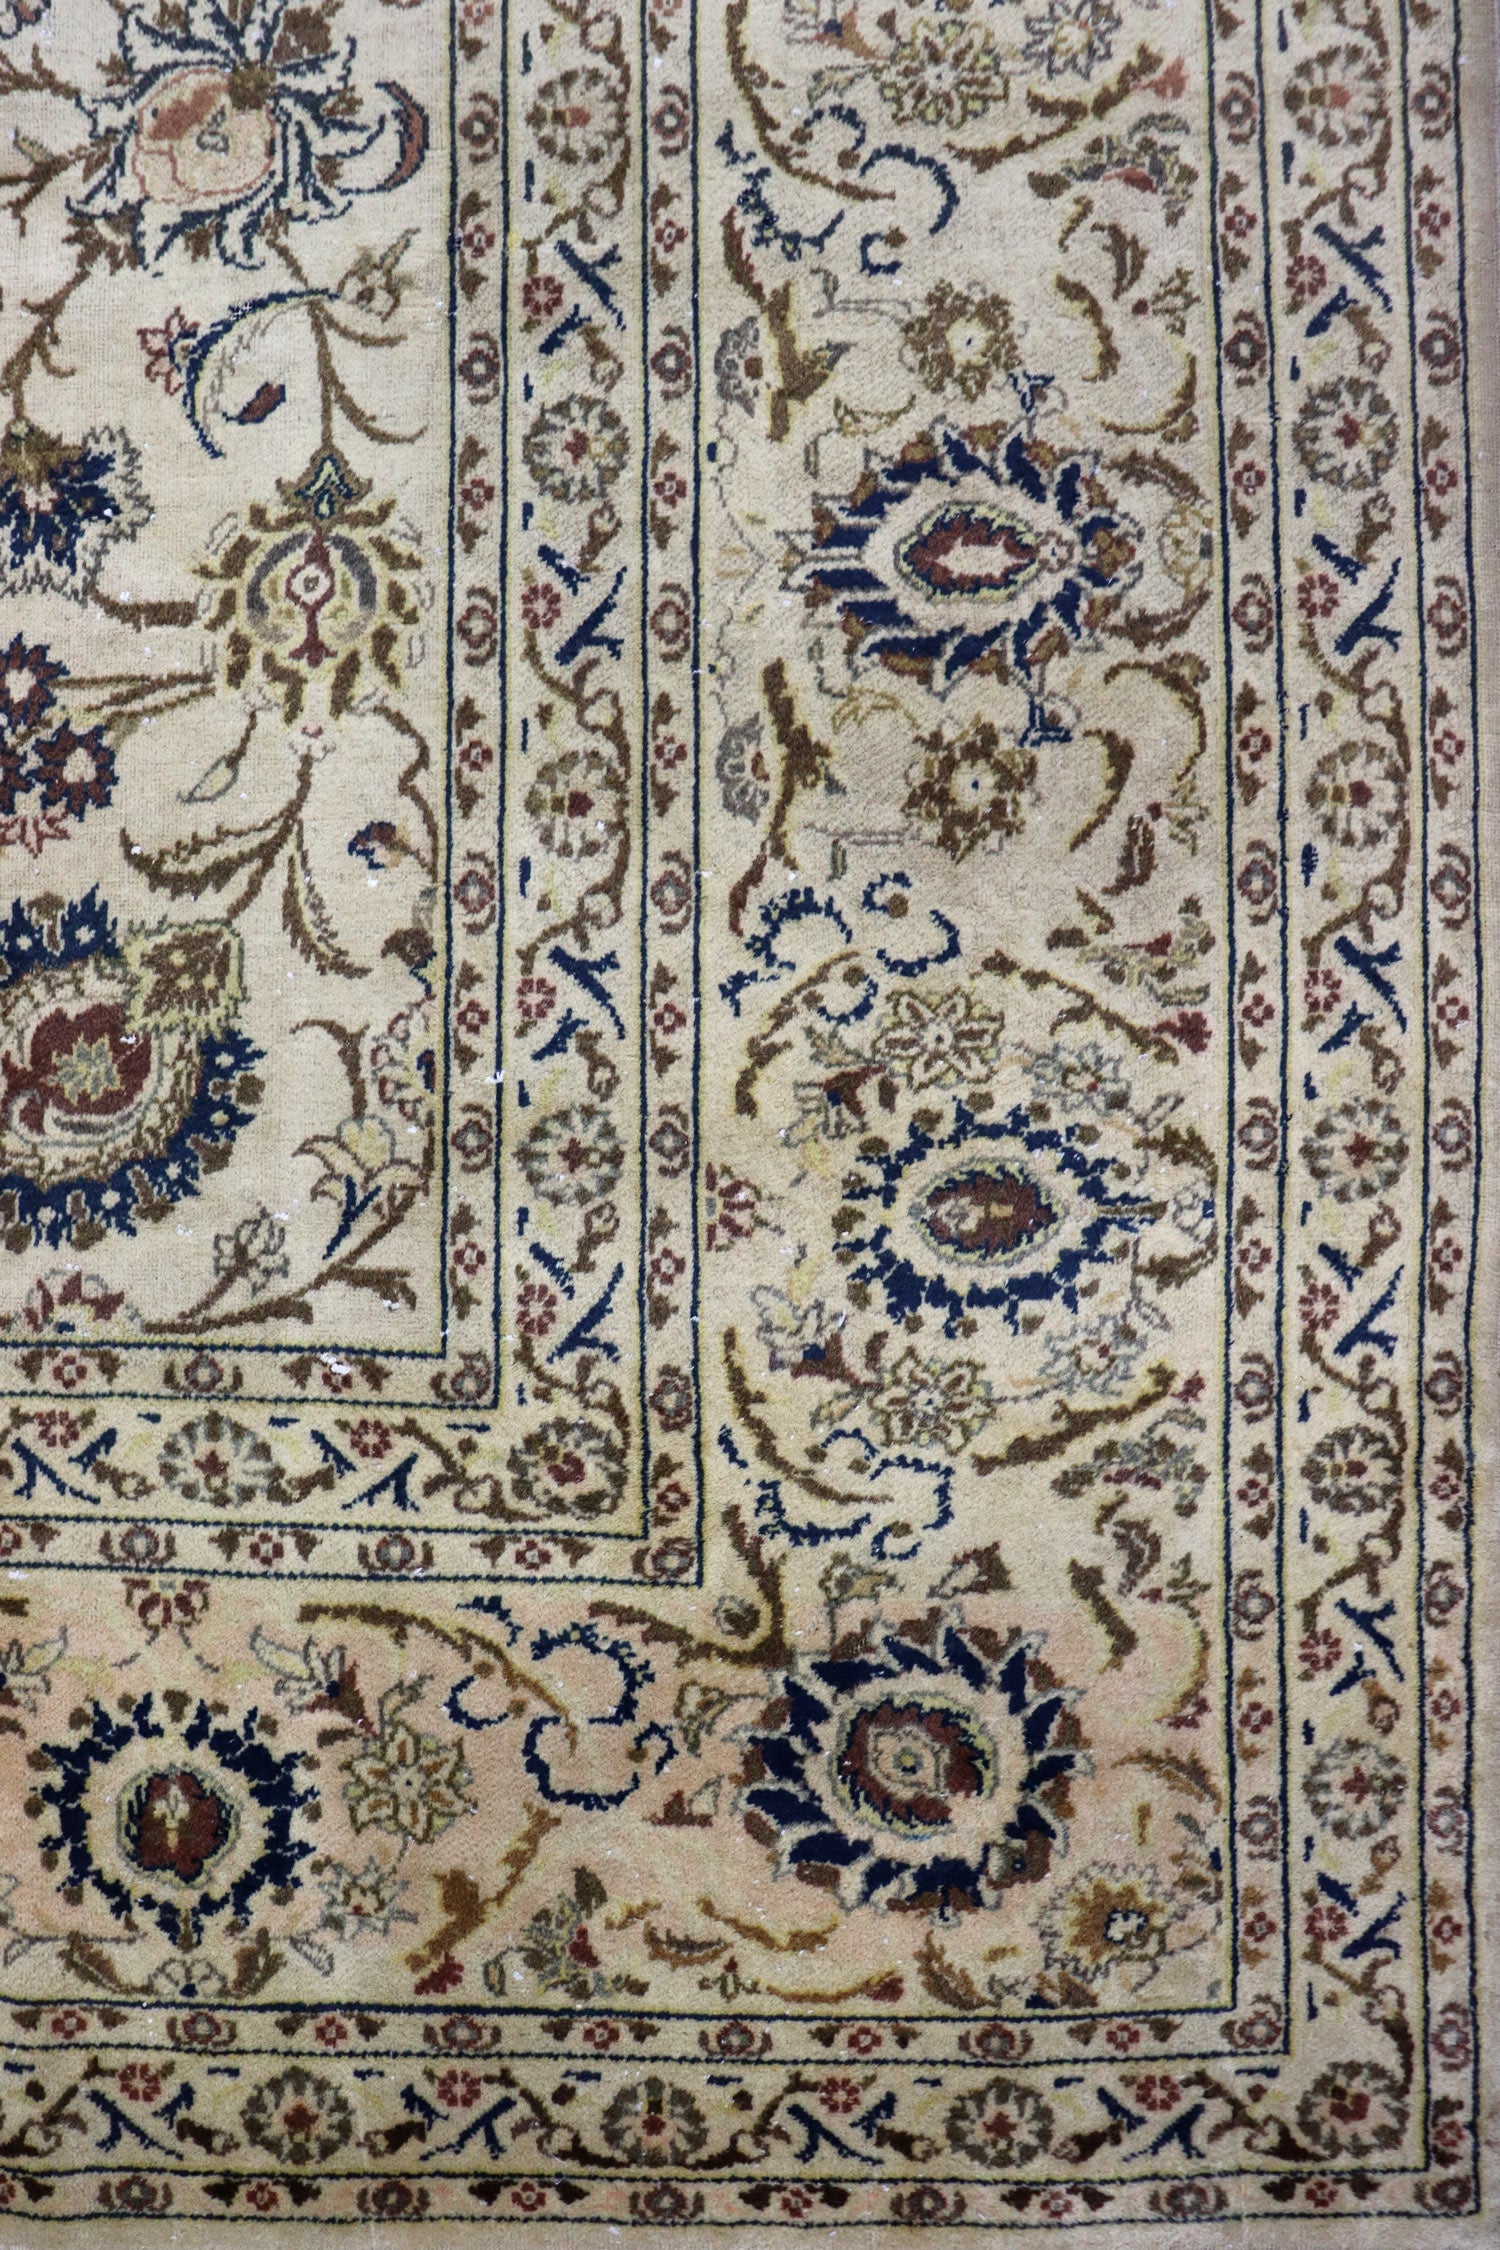 Antique Kashan Handwoven Traditional Rug, J65490